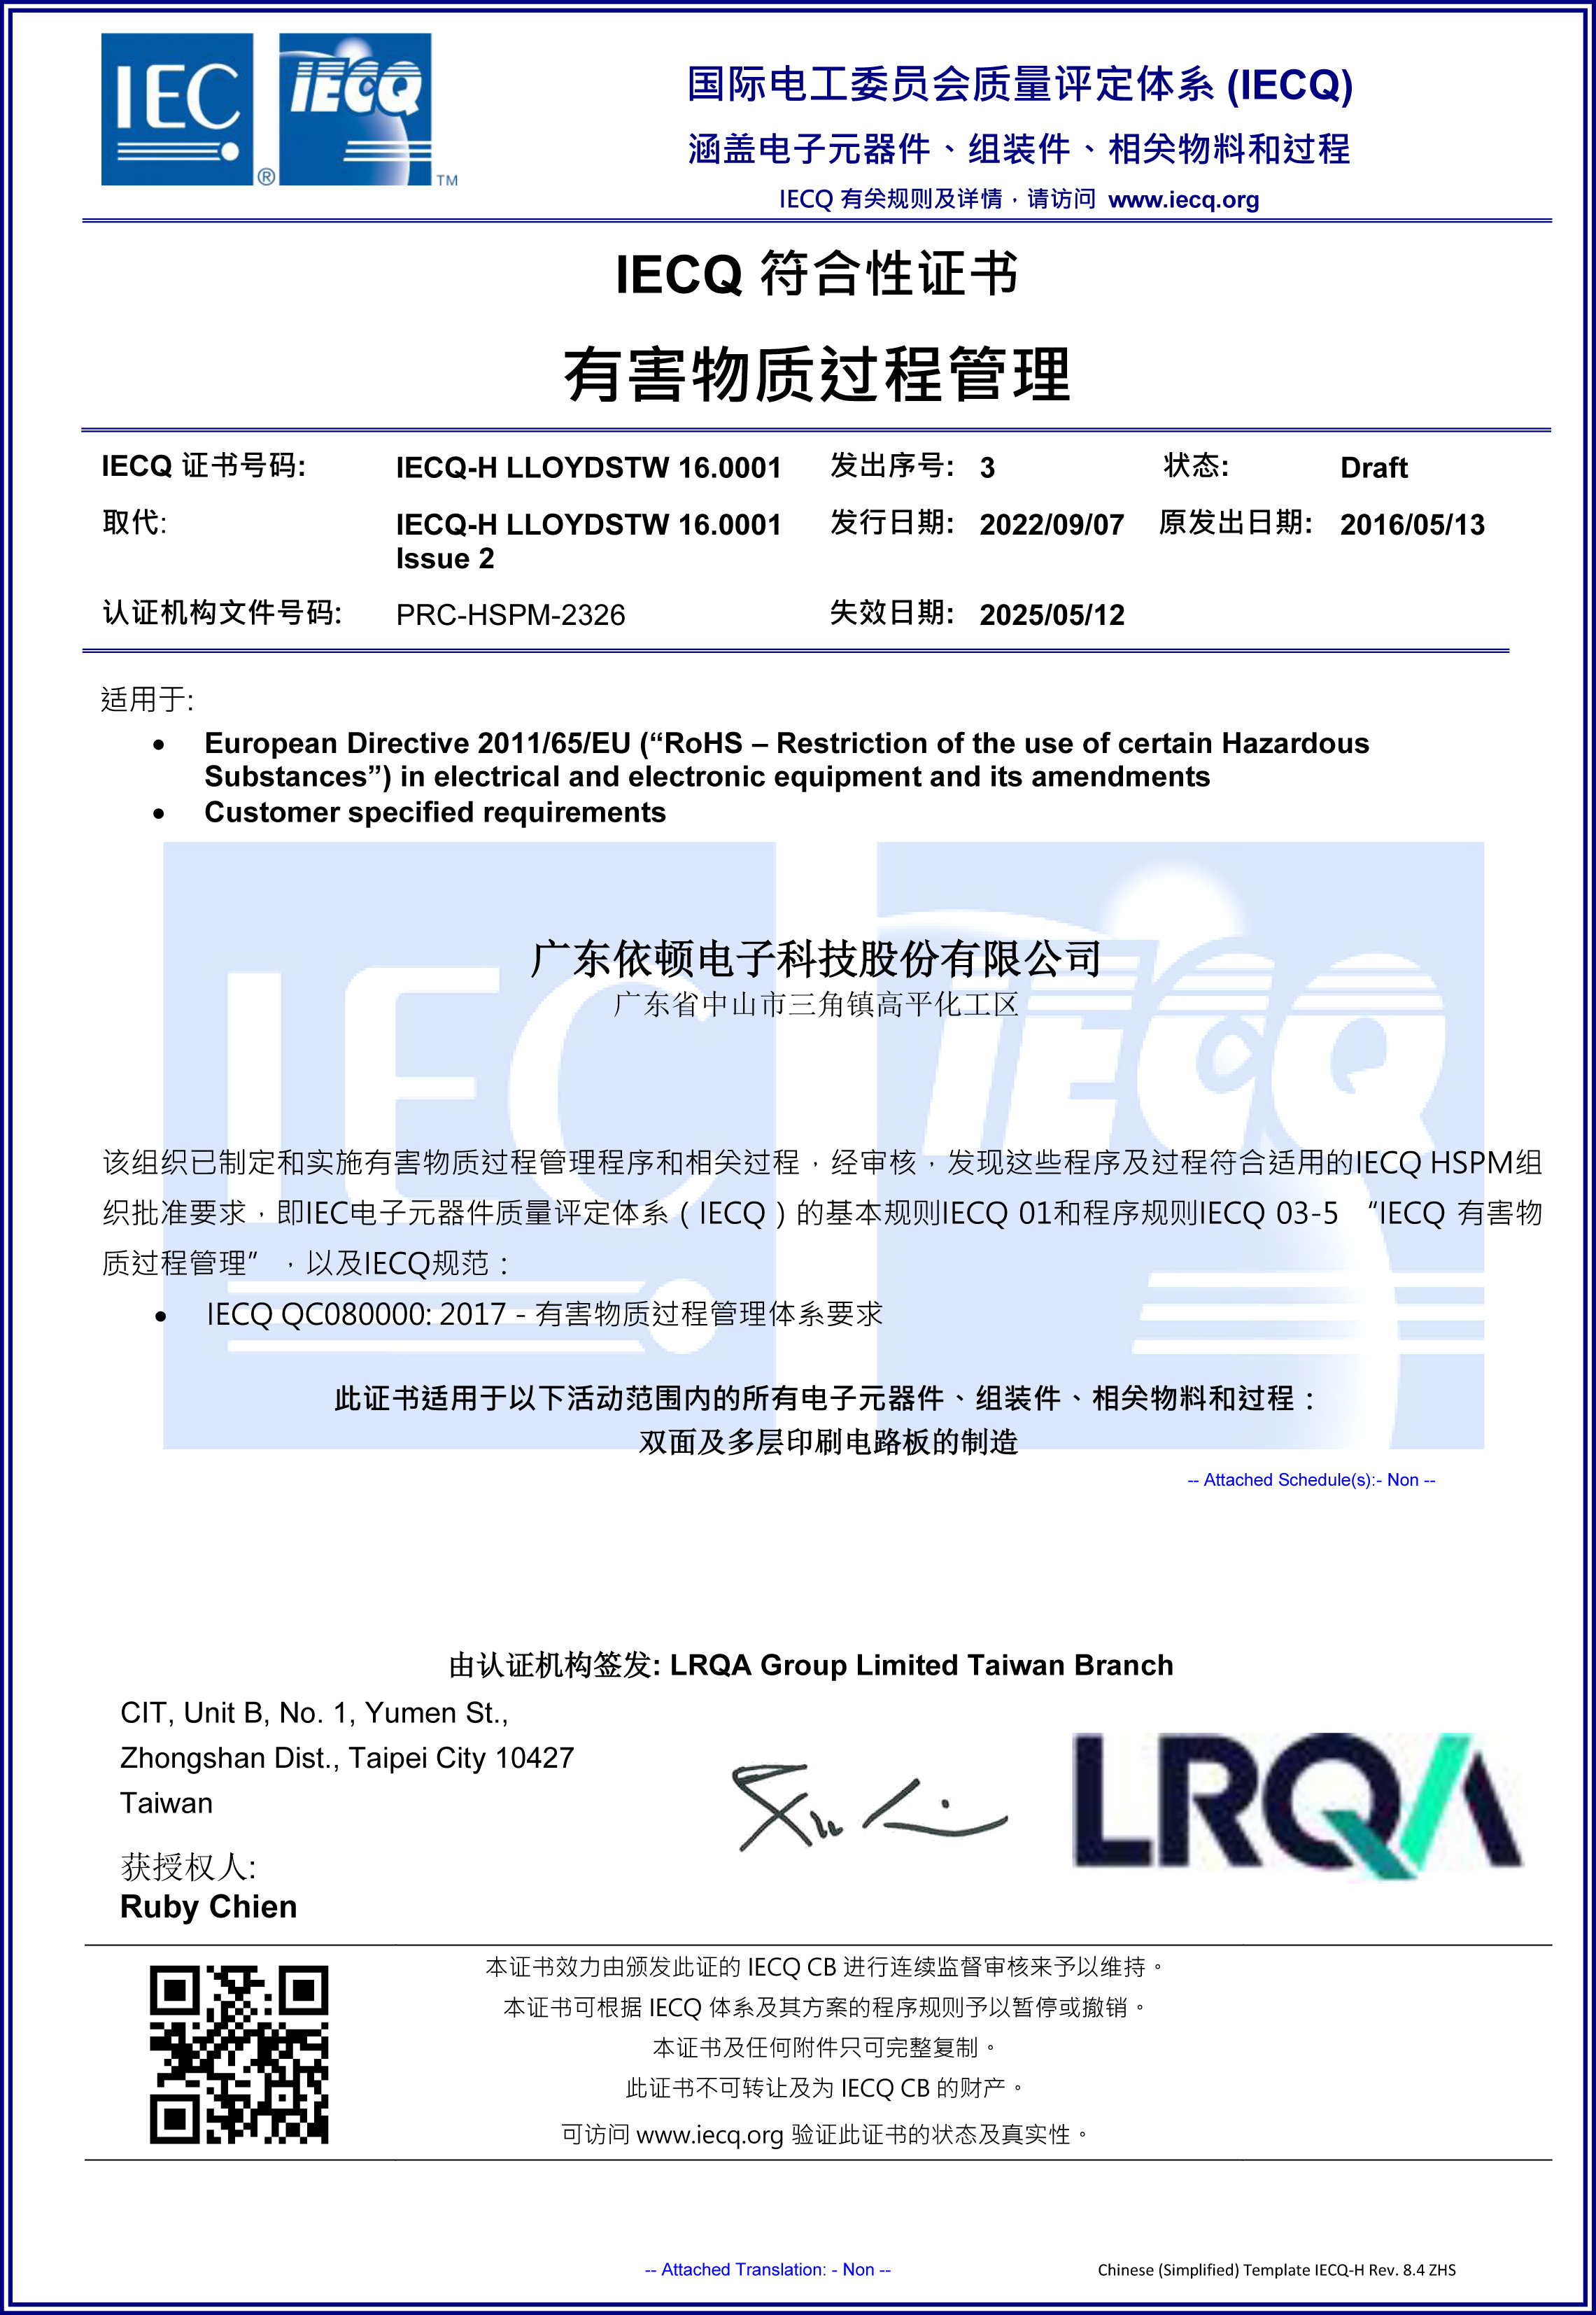 QC080000 Hazardous Substances Management System Certification